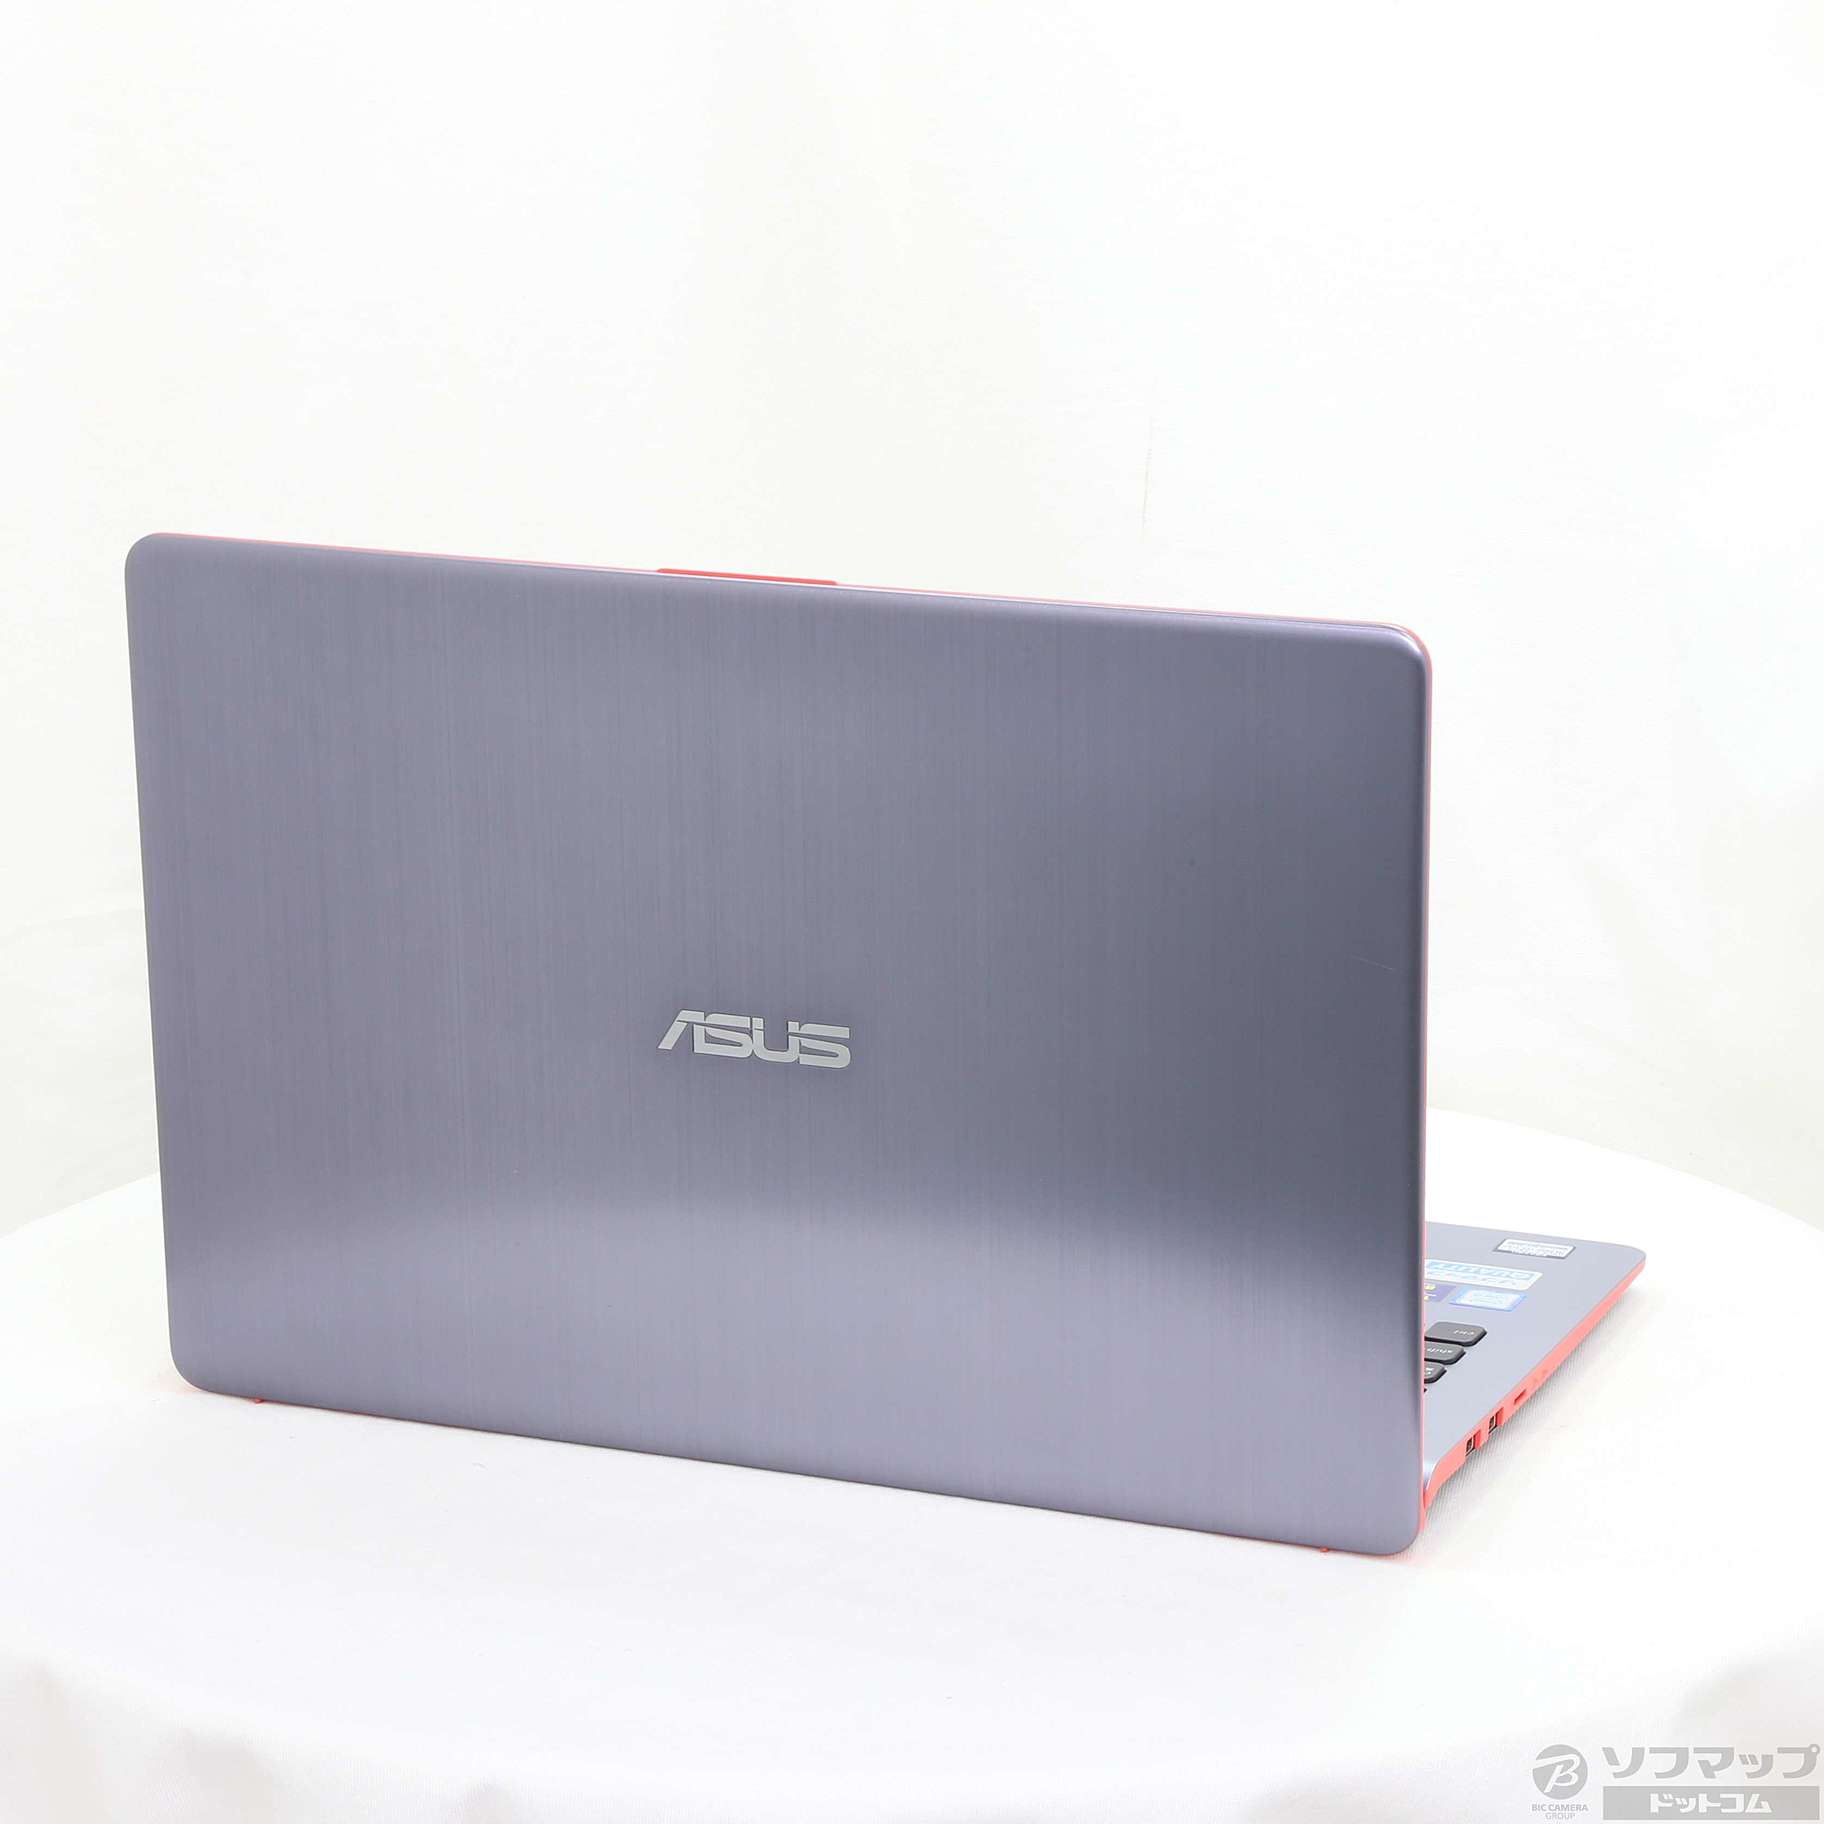 【新品未開封】ASUS ノートパソコンVivoBook S530UA-825GR